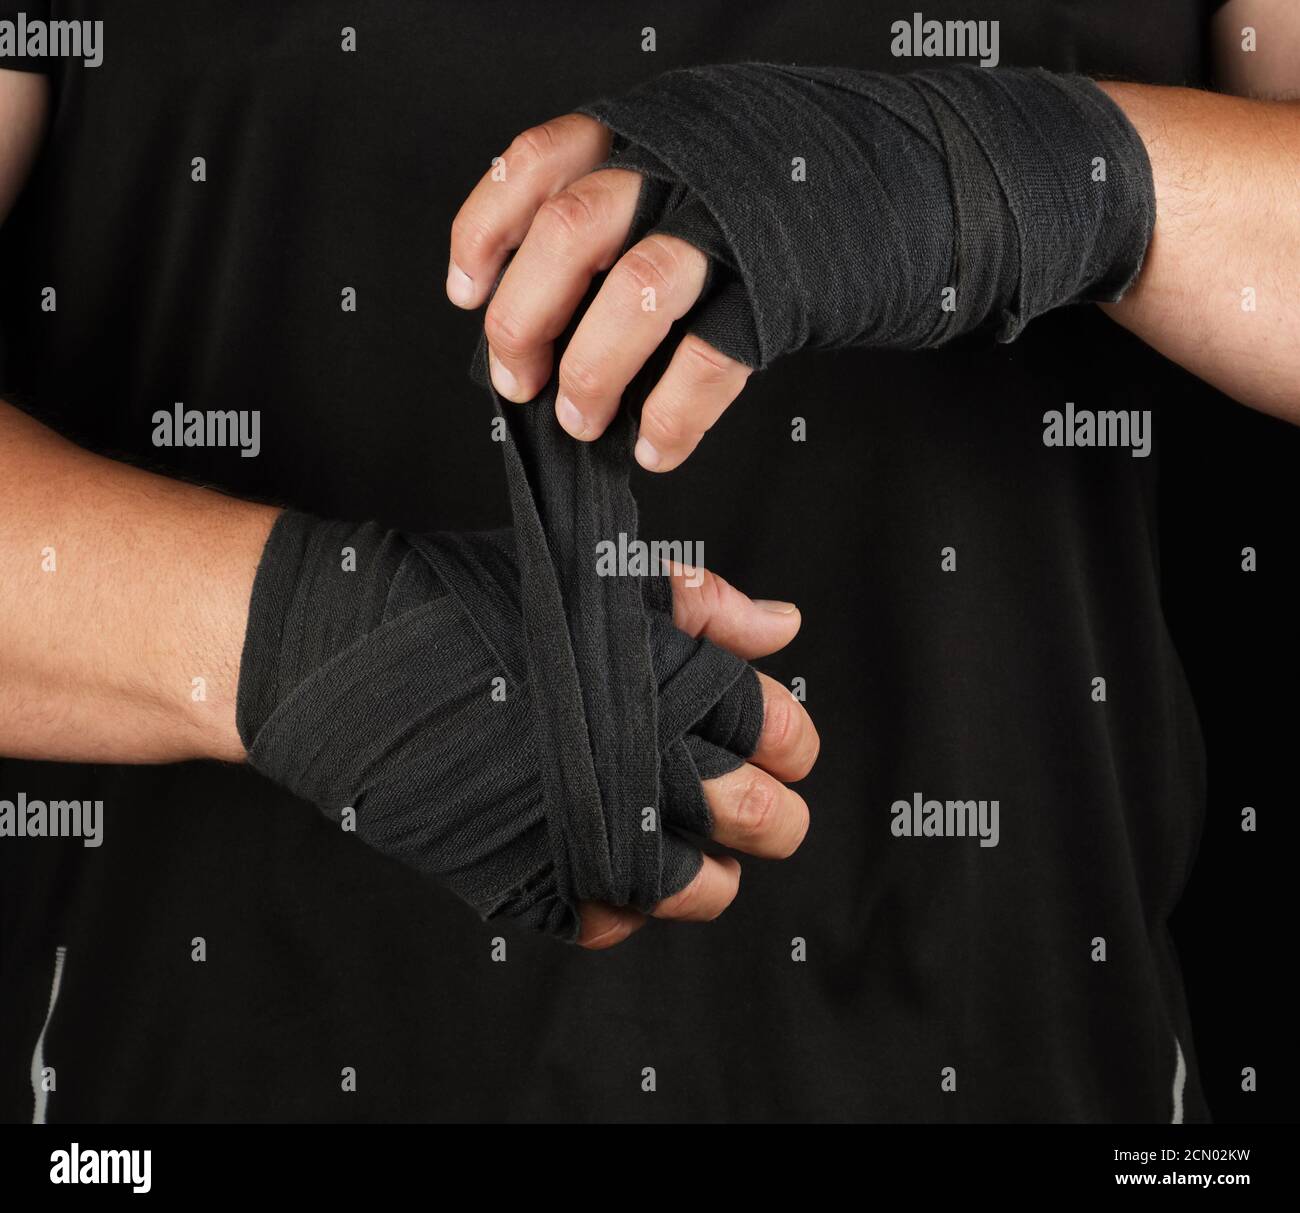 l'athlète adulte se trouve dans des vêtements noirs et enveloppe ses mains en bandage élastique textile noir Banque D'Images